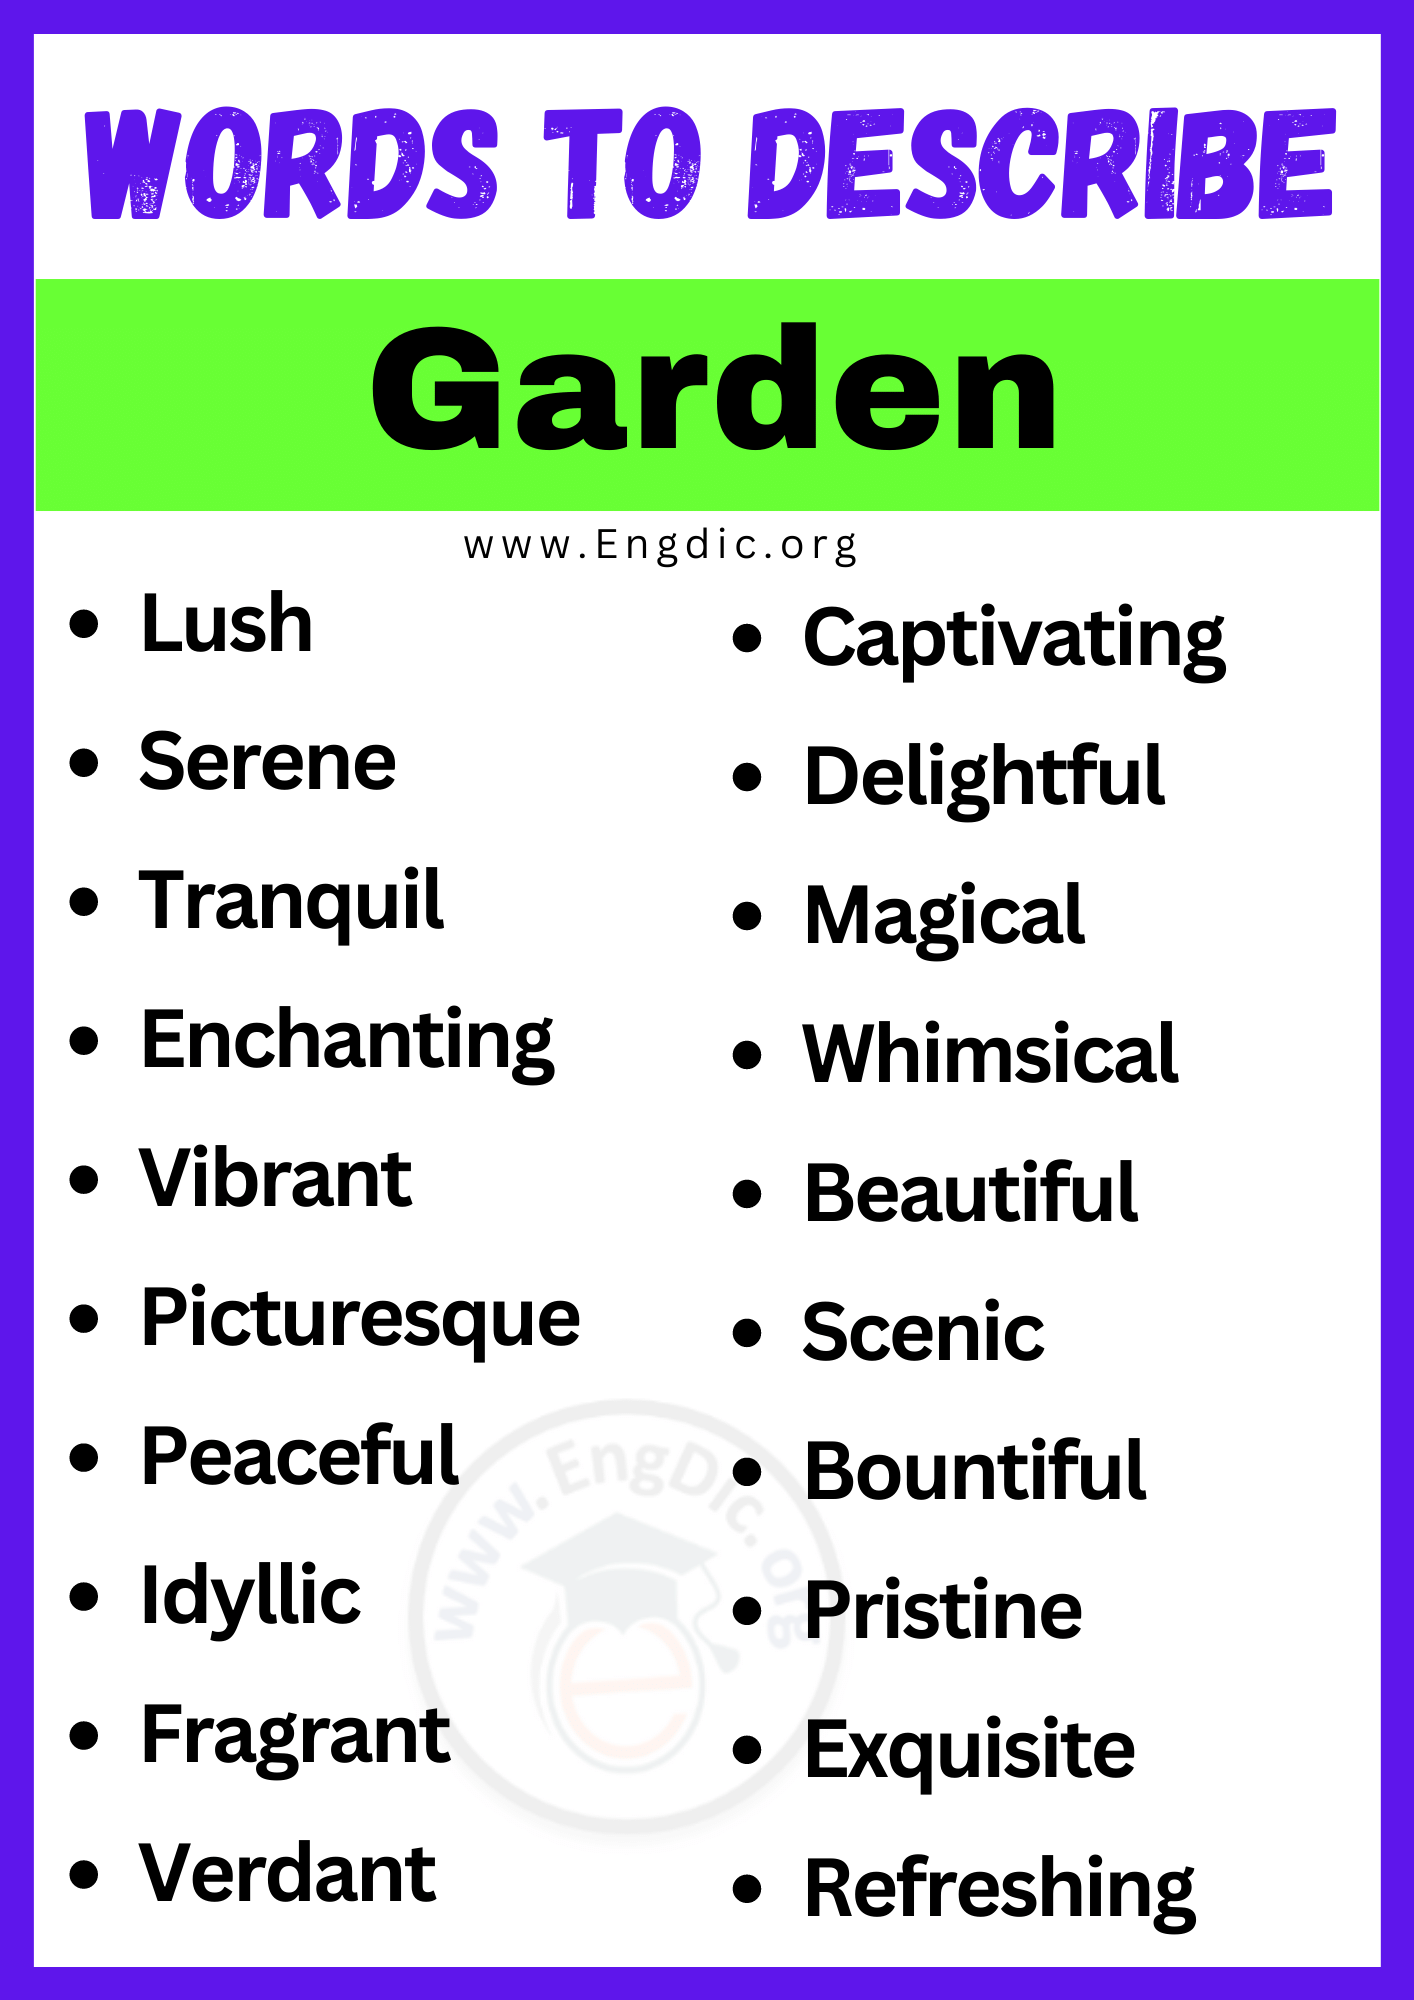 Words to Describe Garden